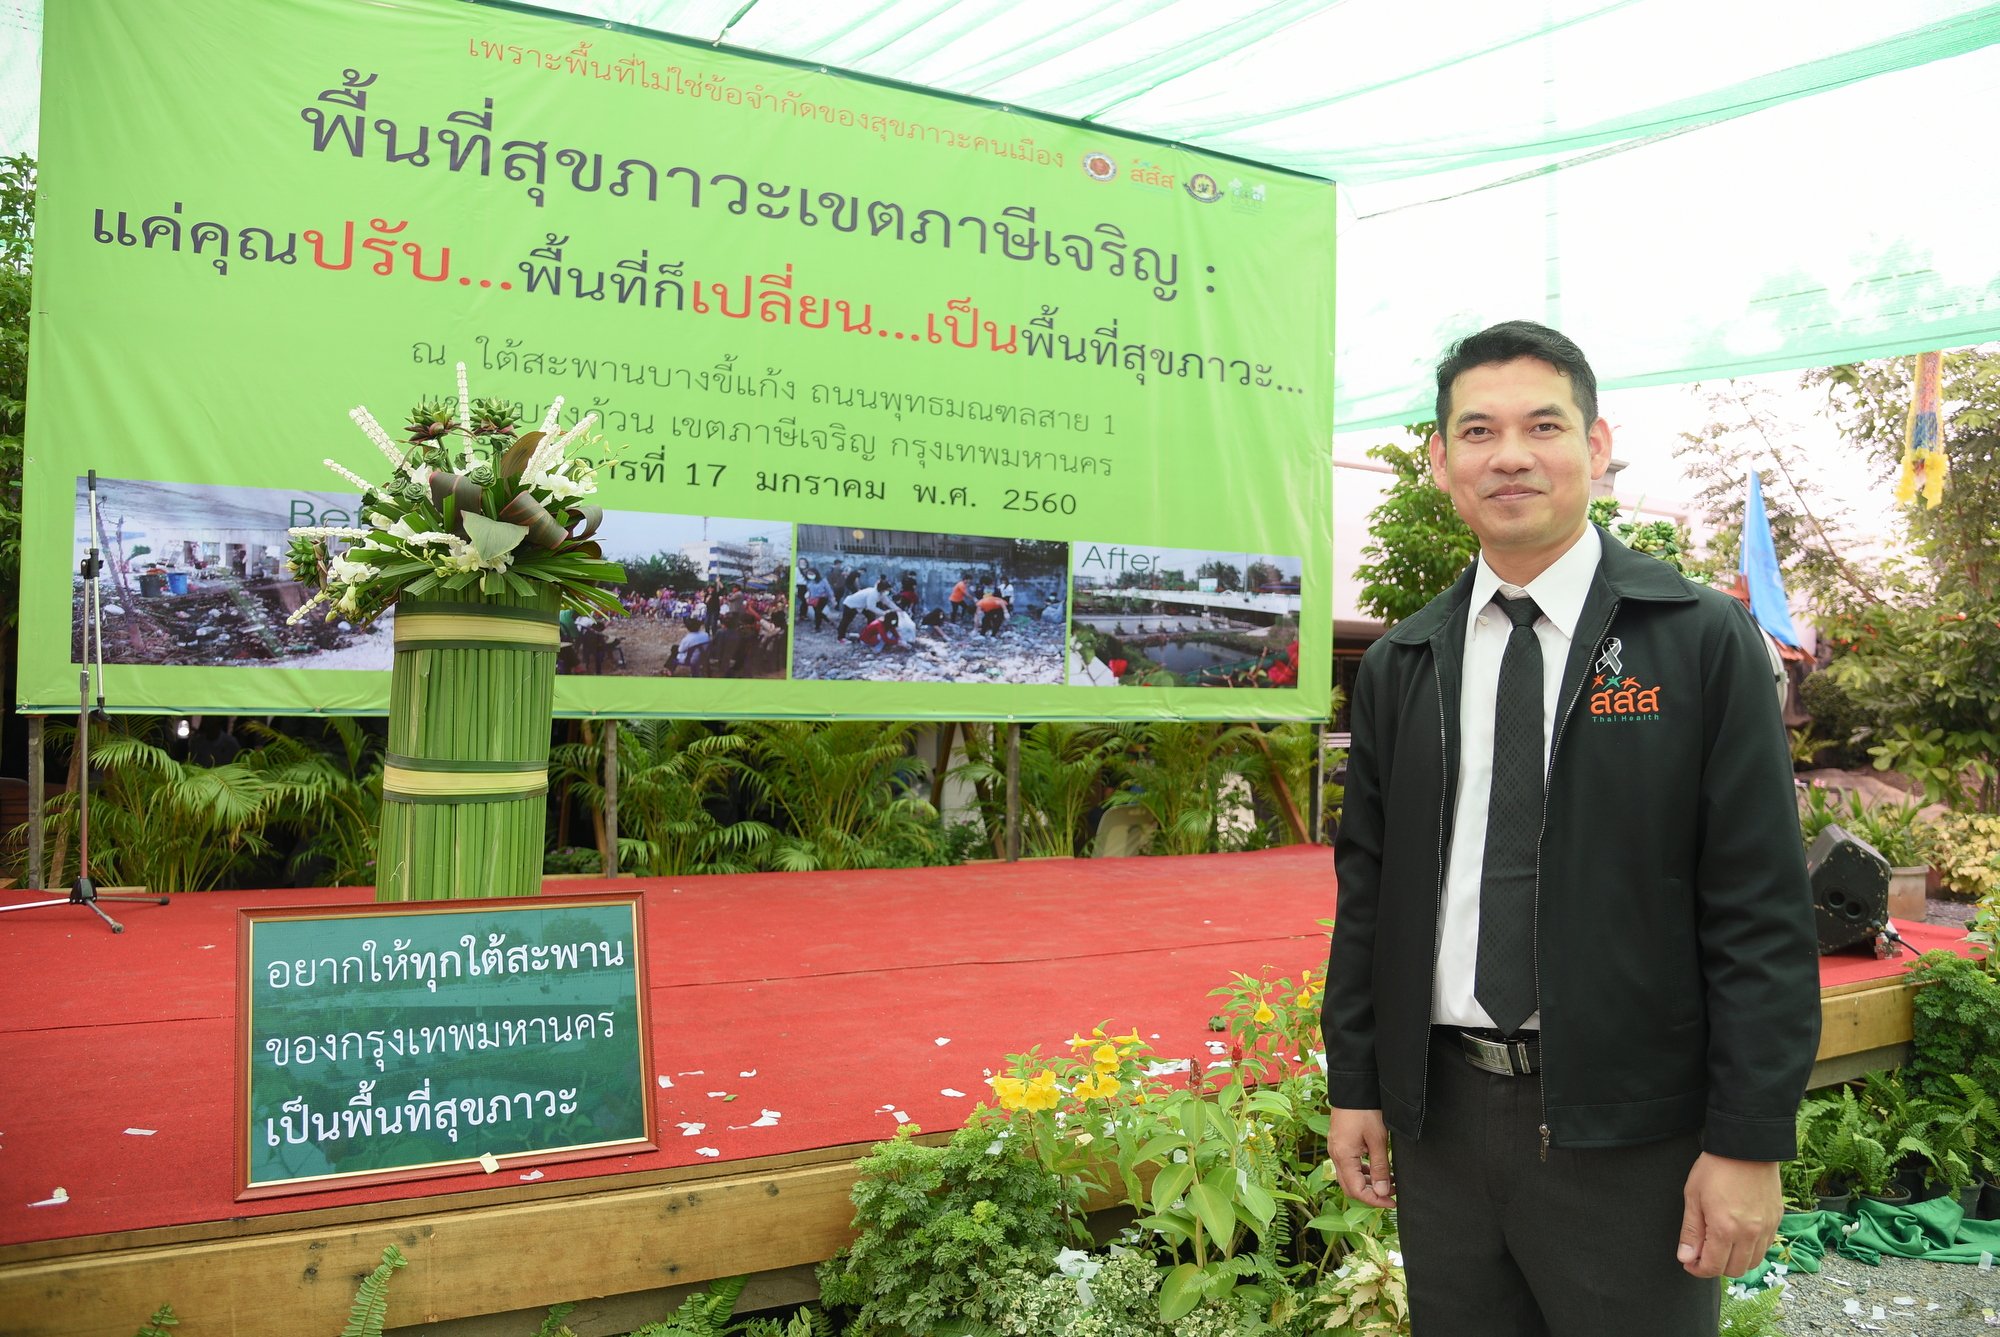 เขตภาษีเจริญ เปลี่ยนพื้นที่รกร้างเป็นพื้นที่สุขภาวะ thaihealth